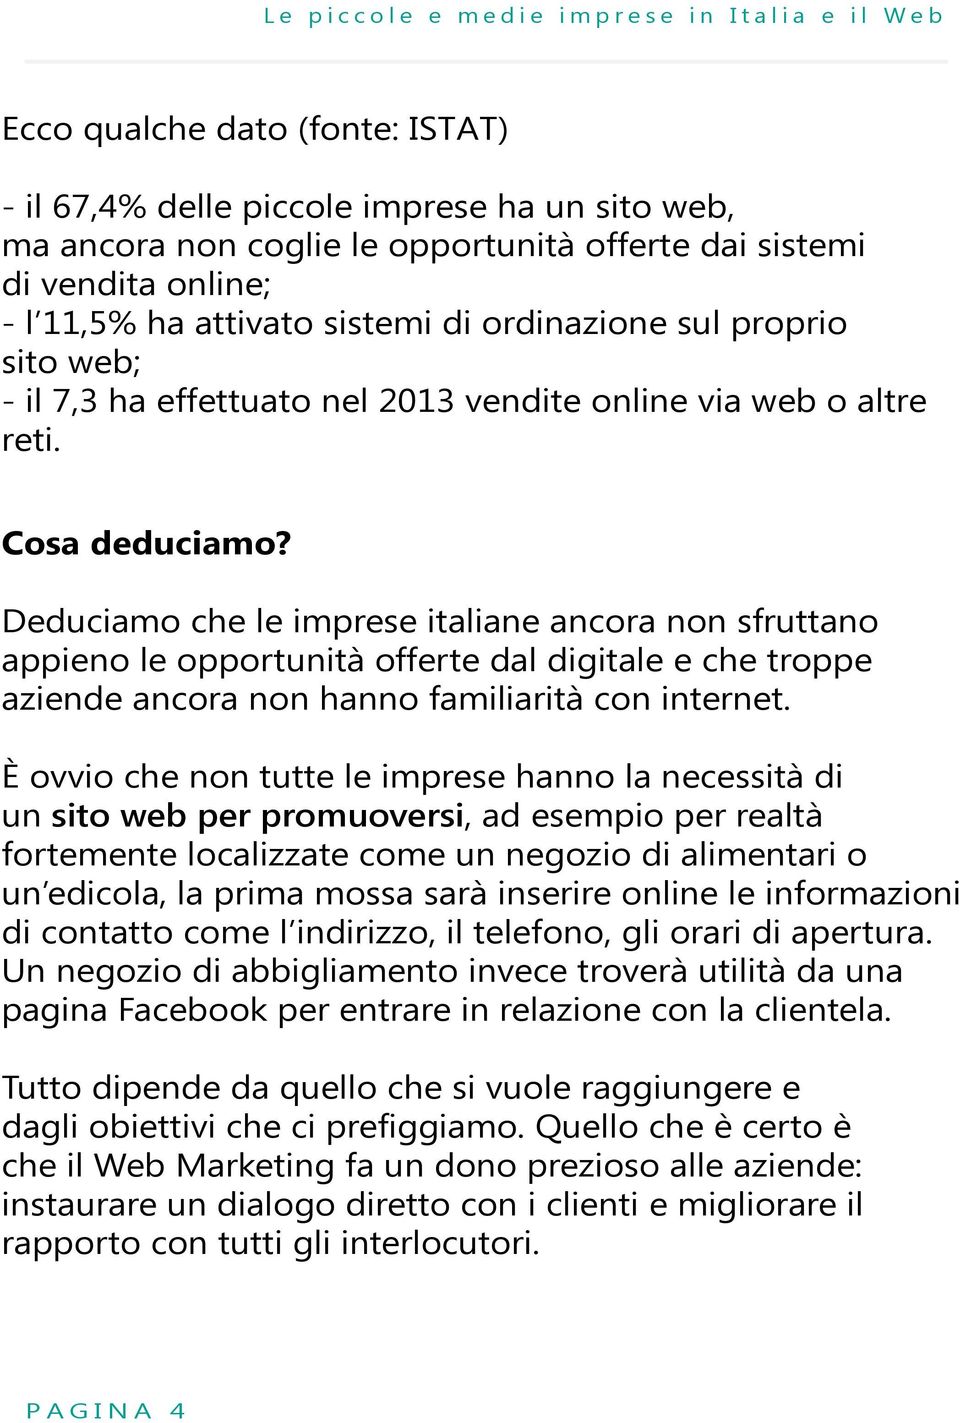 Deduciamo che le imprese italiane ancora non sfruttano appieno le opportunità offerte dal digitale e che troppe aziende ancora non hanno familiarità con internet.